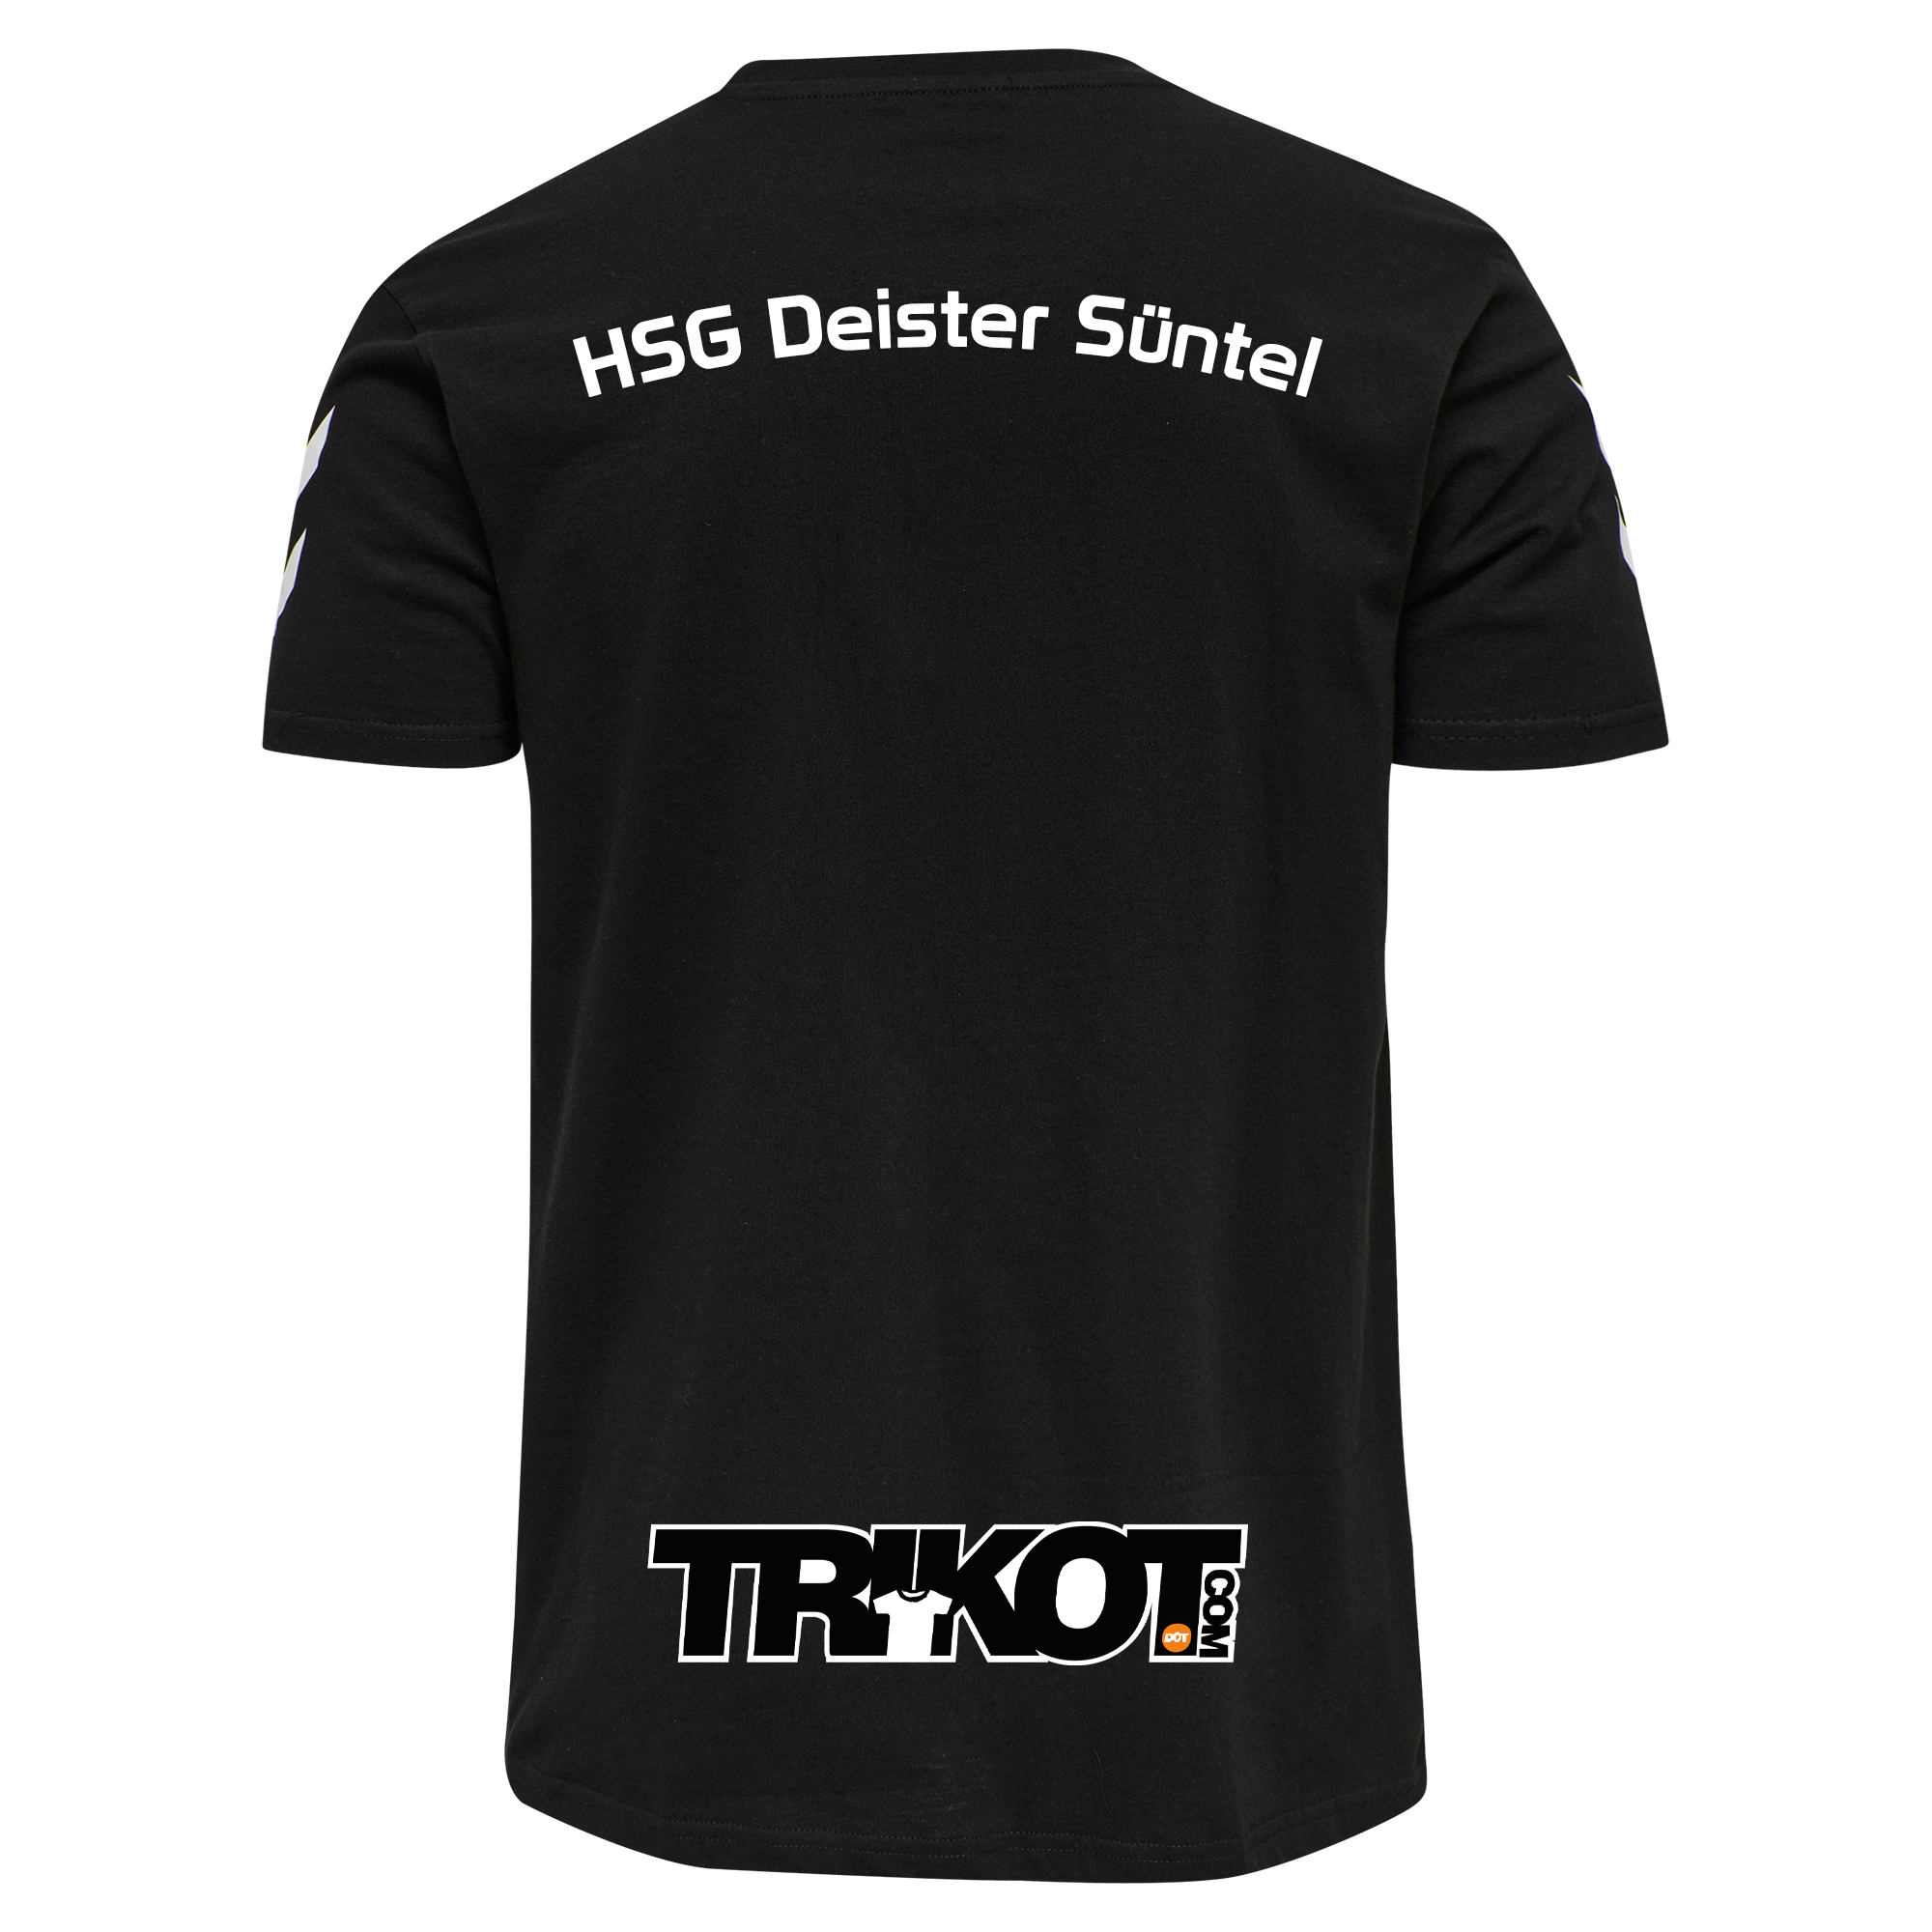 HSG Deister Süntel T-Shirt